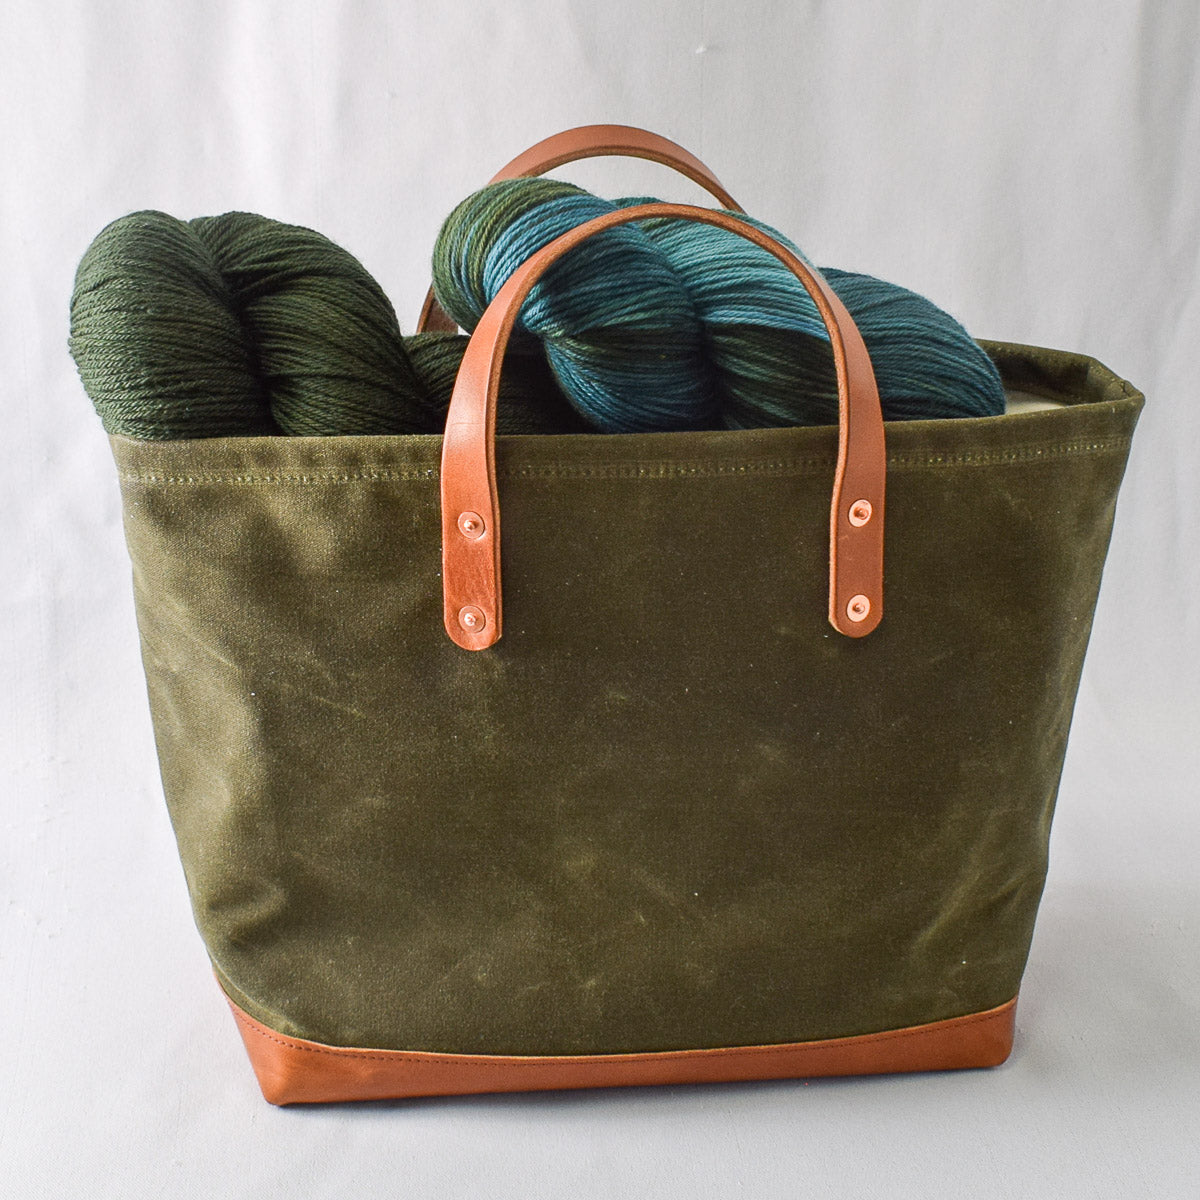 Olive Bag No. 4 - The Market Bag